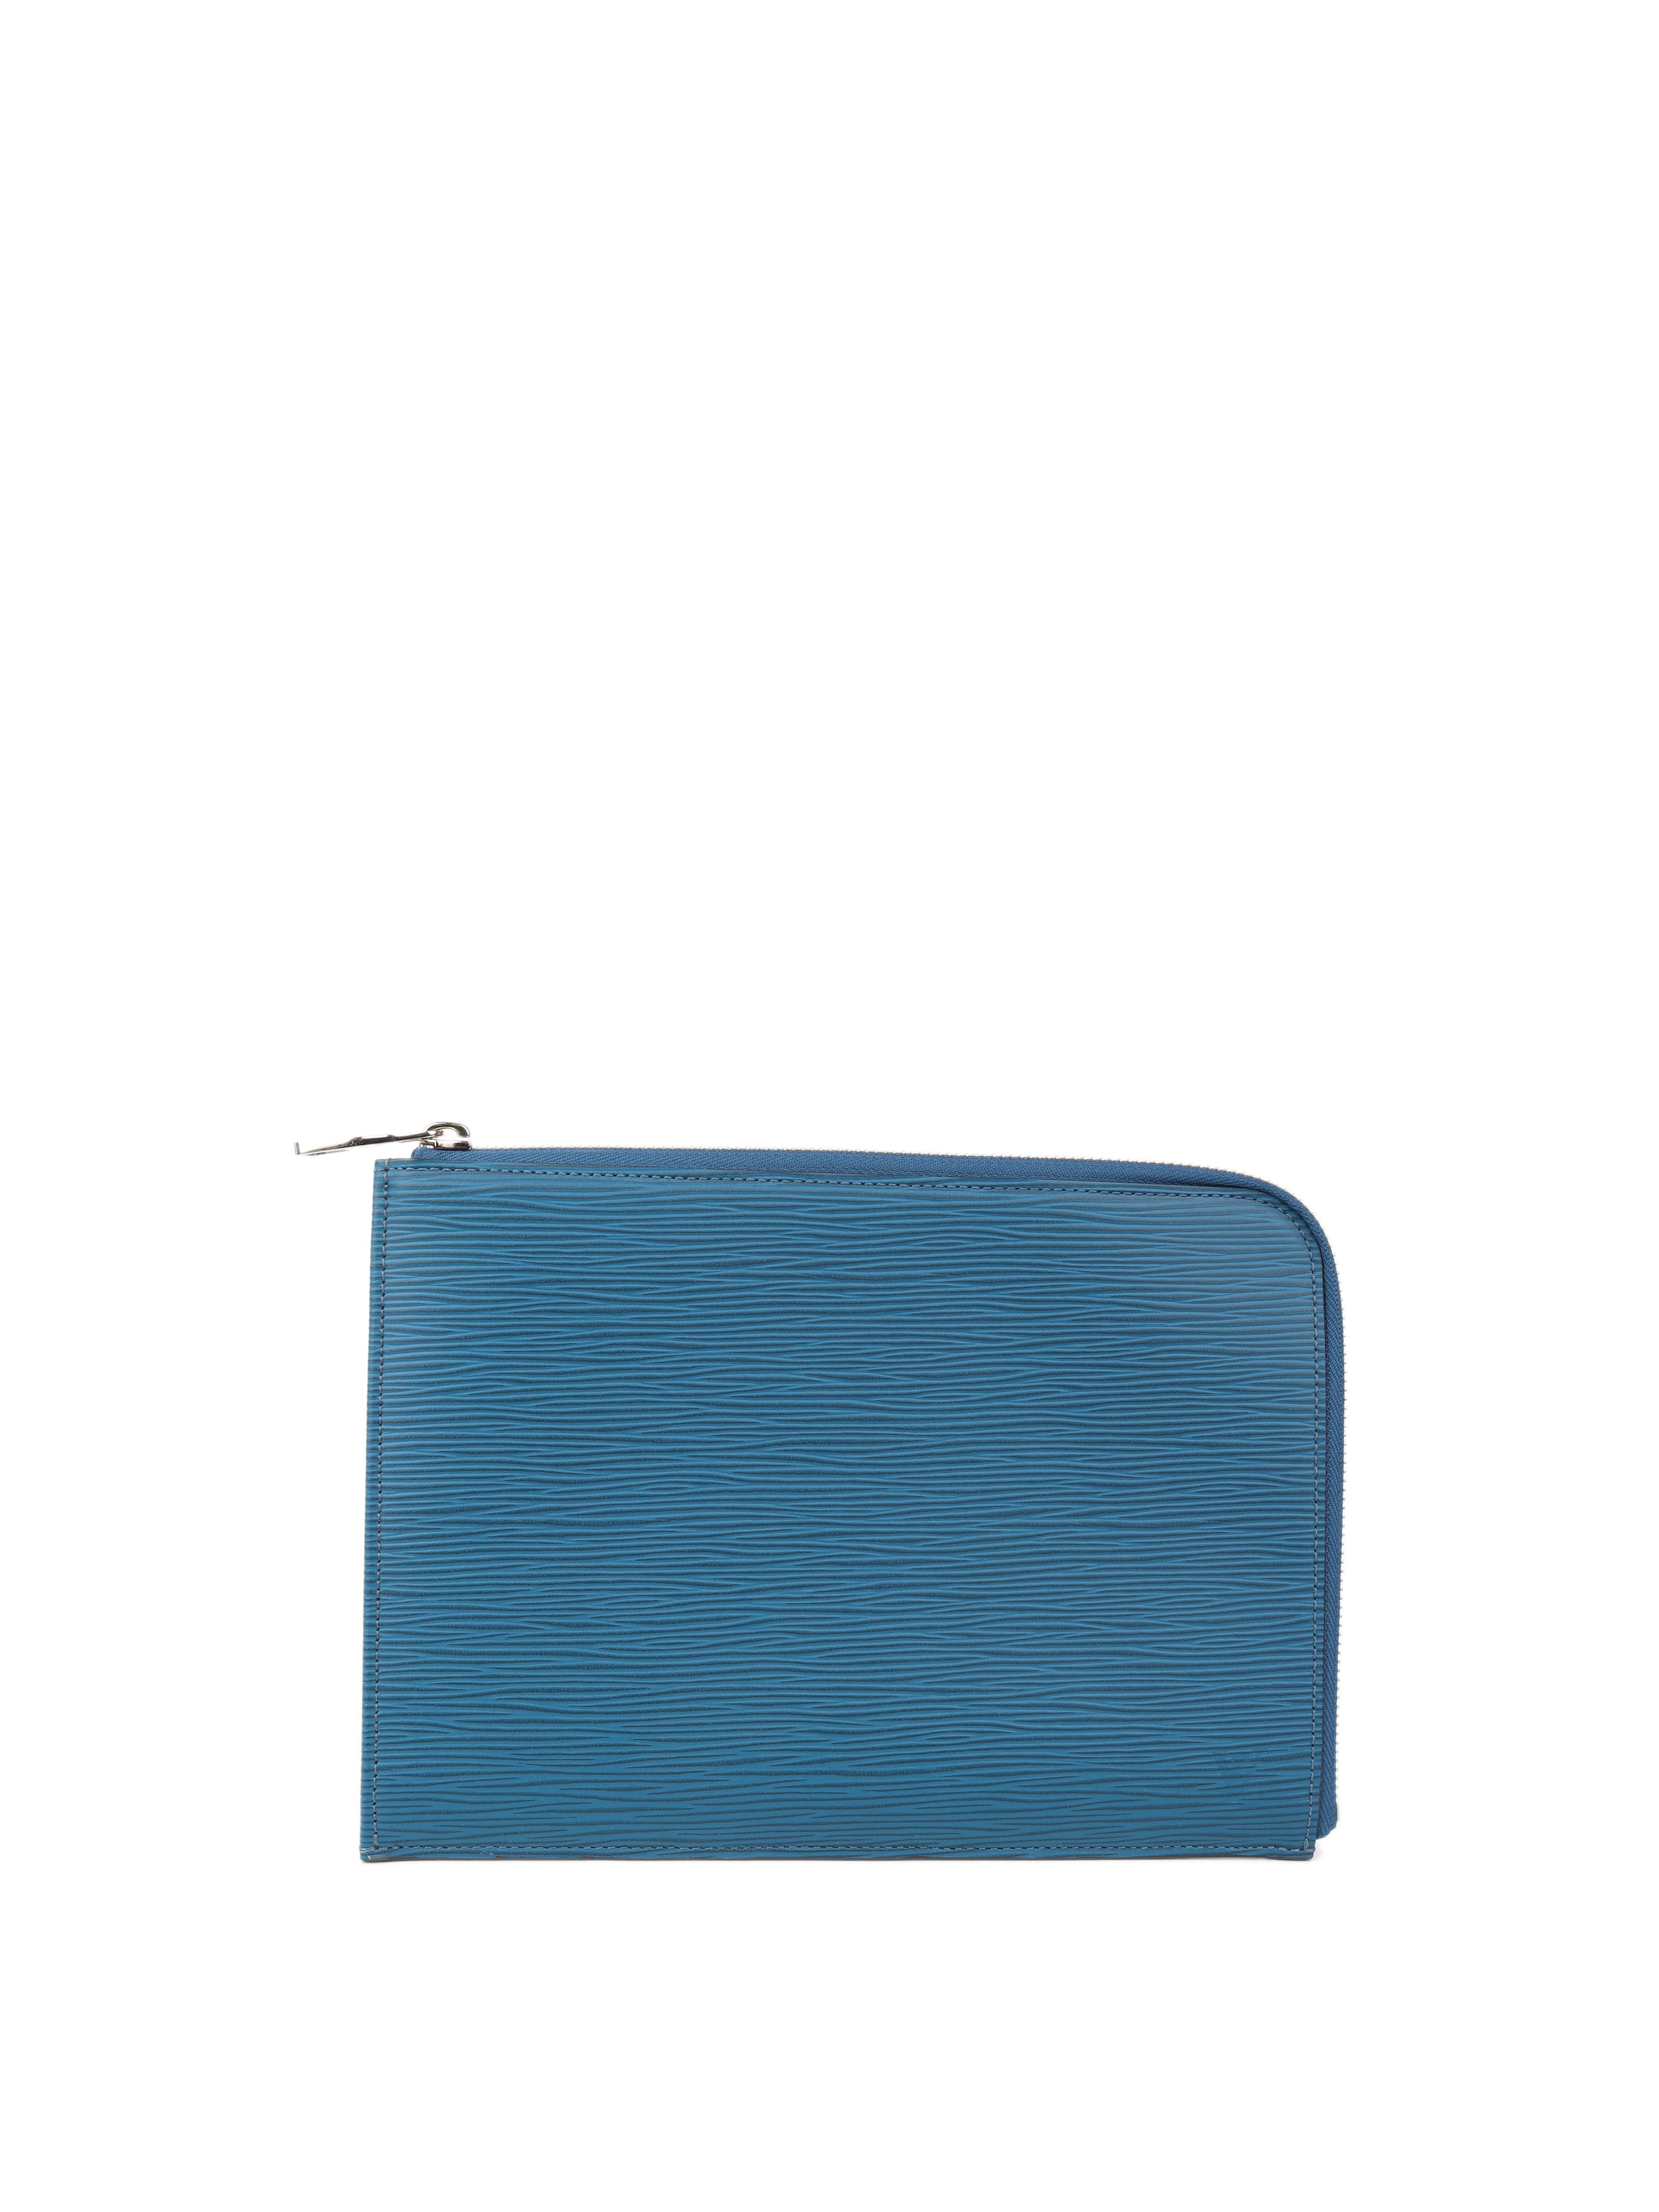 Louis Vuitton Blue Epi Leather Pouch